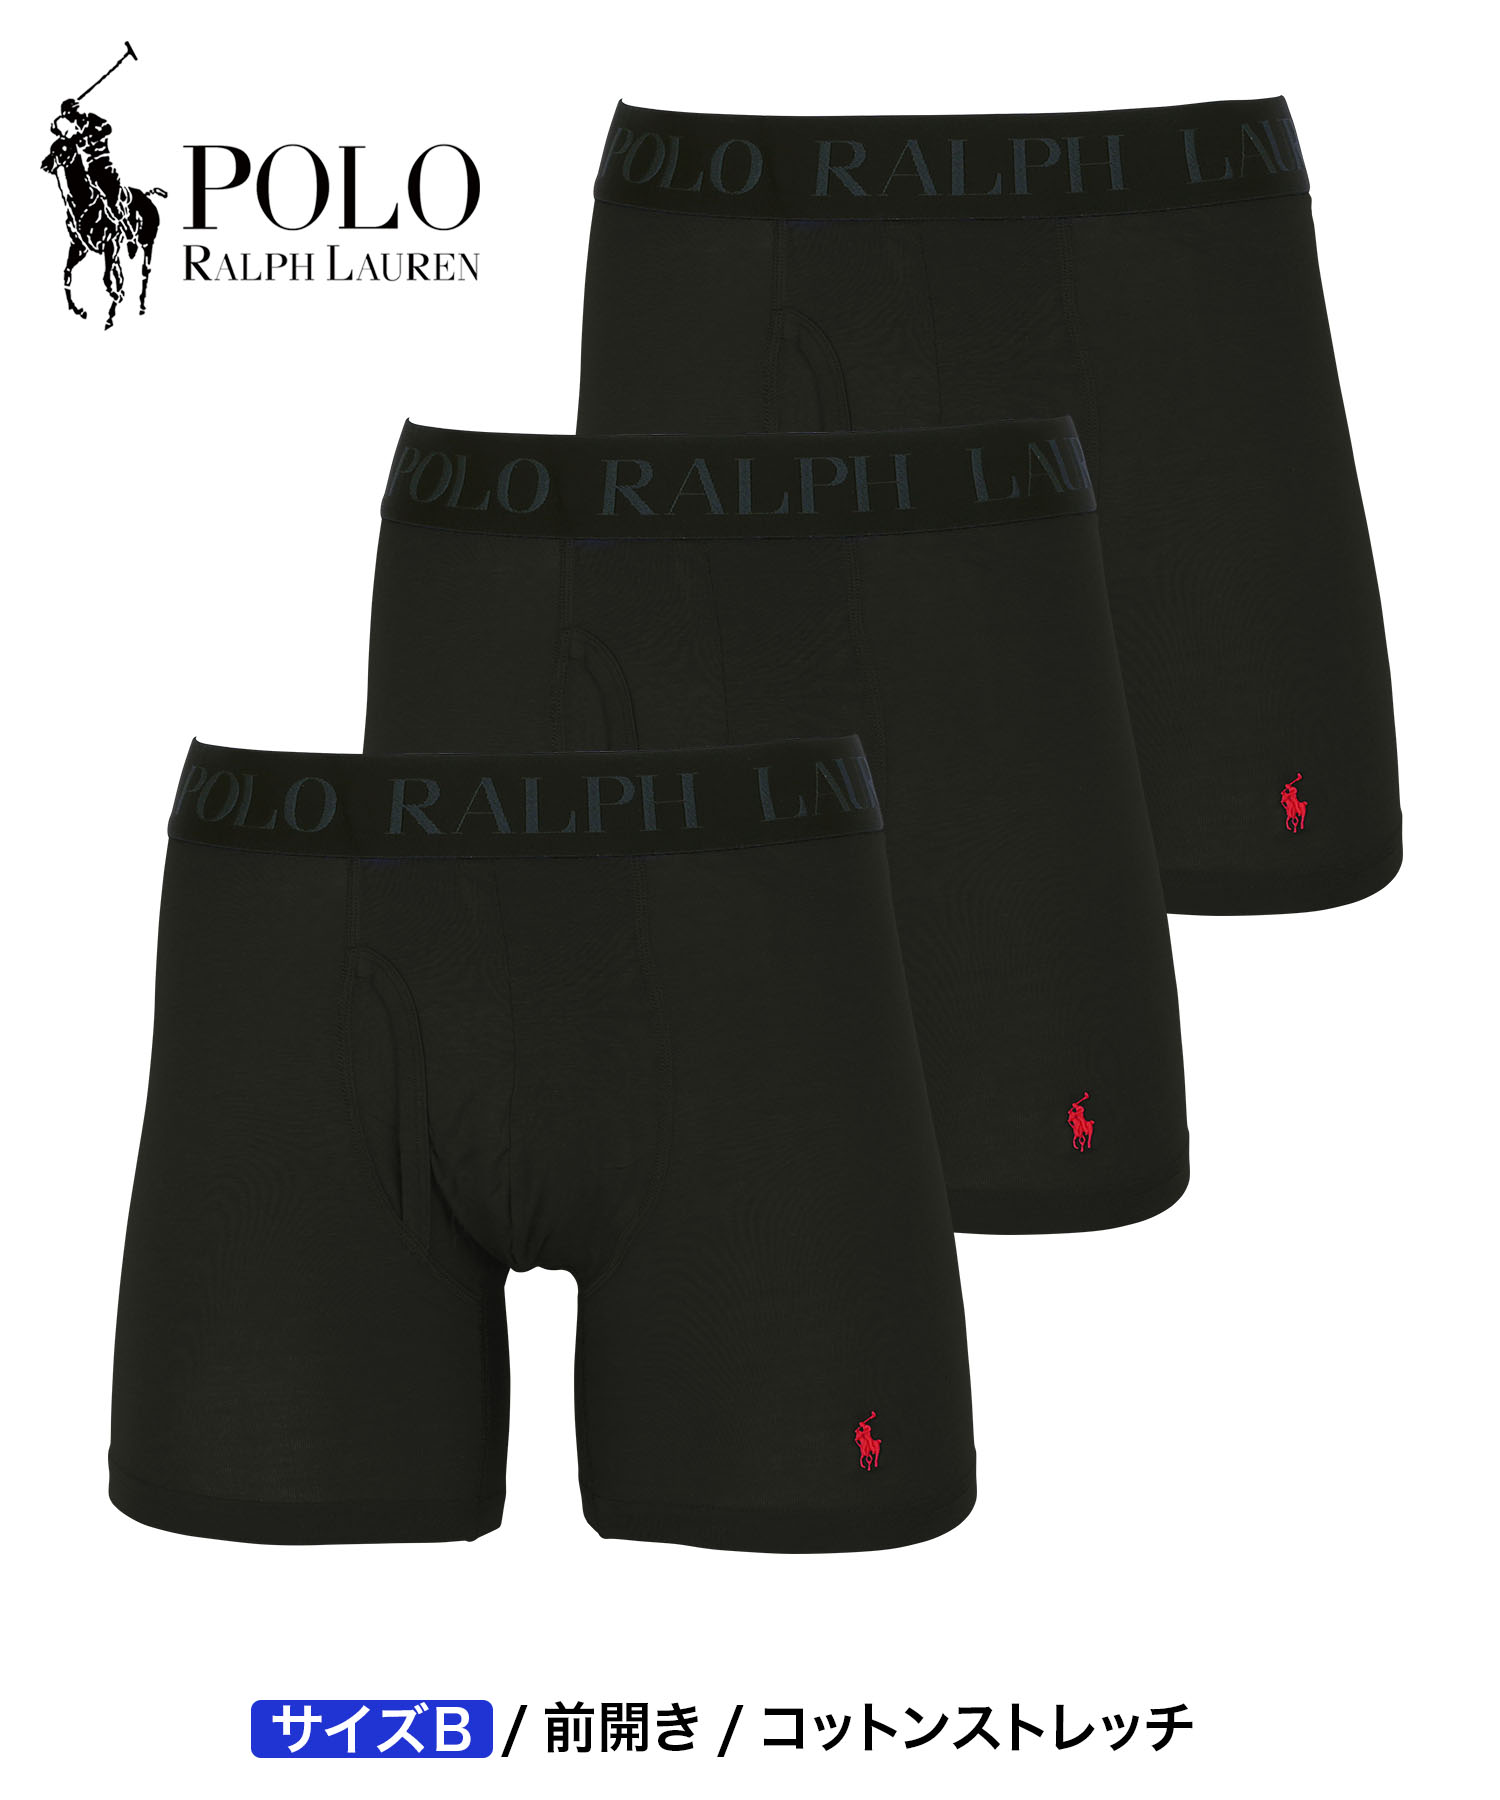 ポロ ラルフローレン POLO RALPH LAUREN ロングボクサーパンツ 3枚セット メンズ アンダーウェア コットン100% 綿 前開き  ブランド ロゴ 高級 ハイブランド